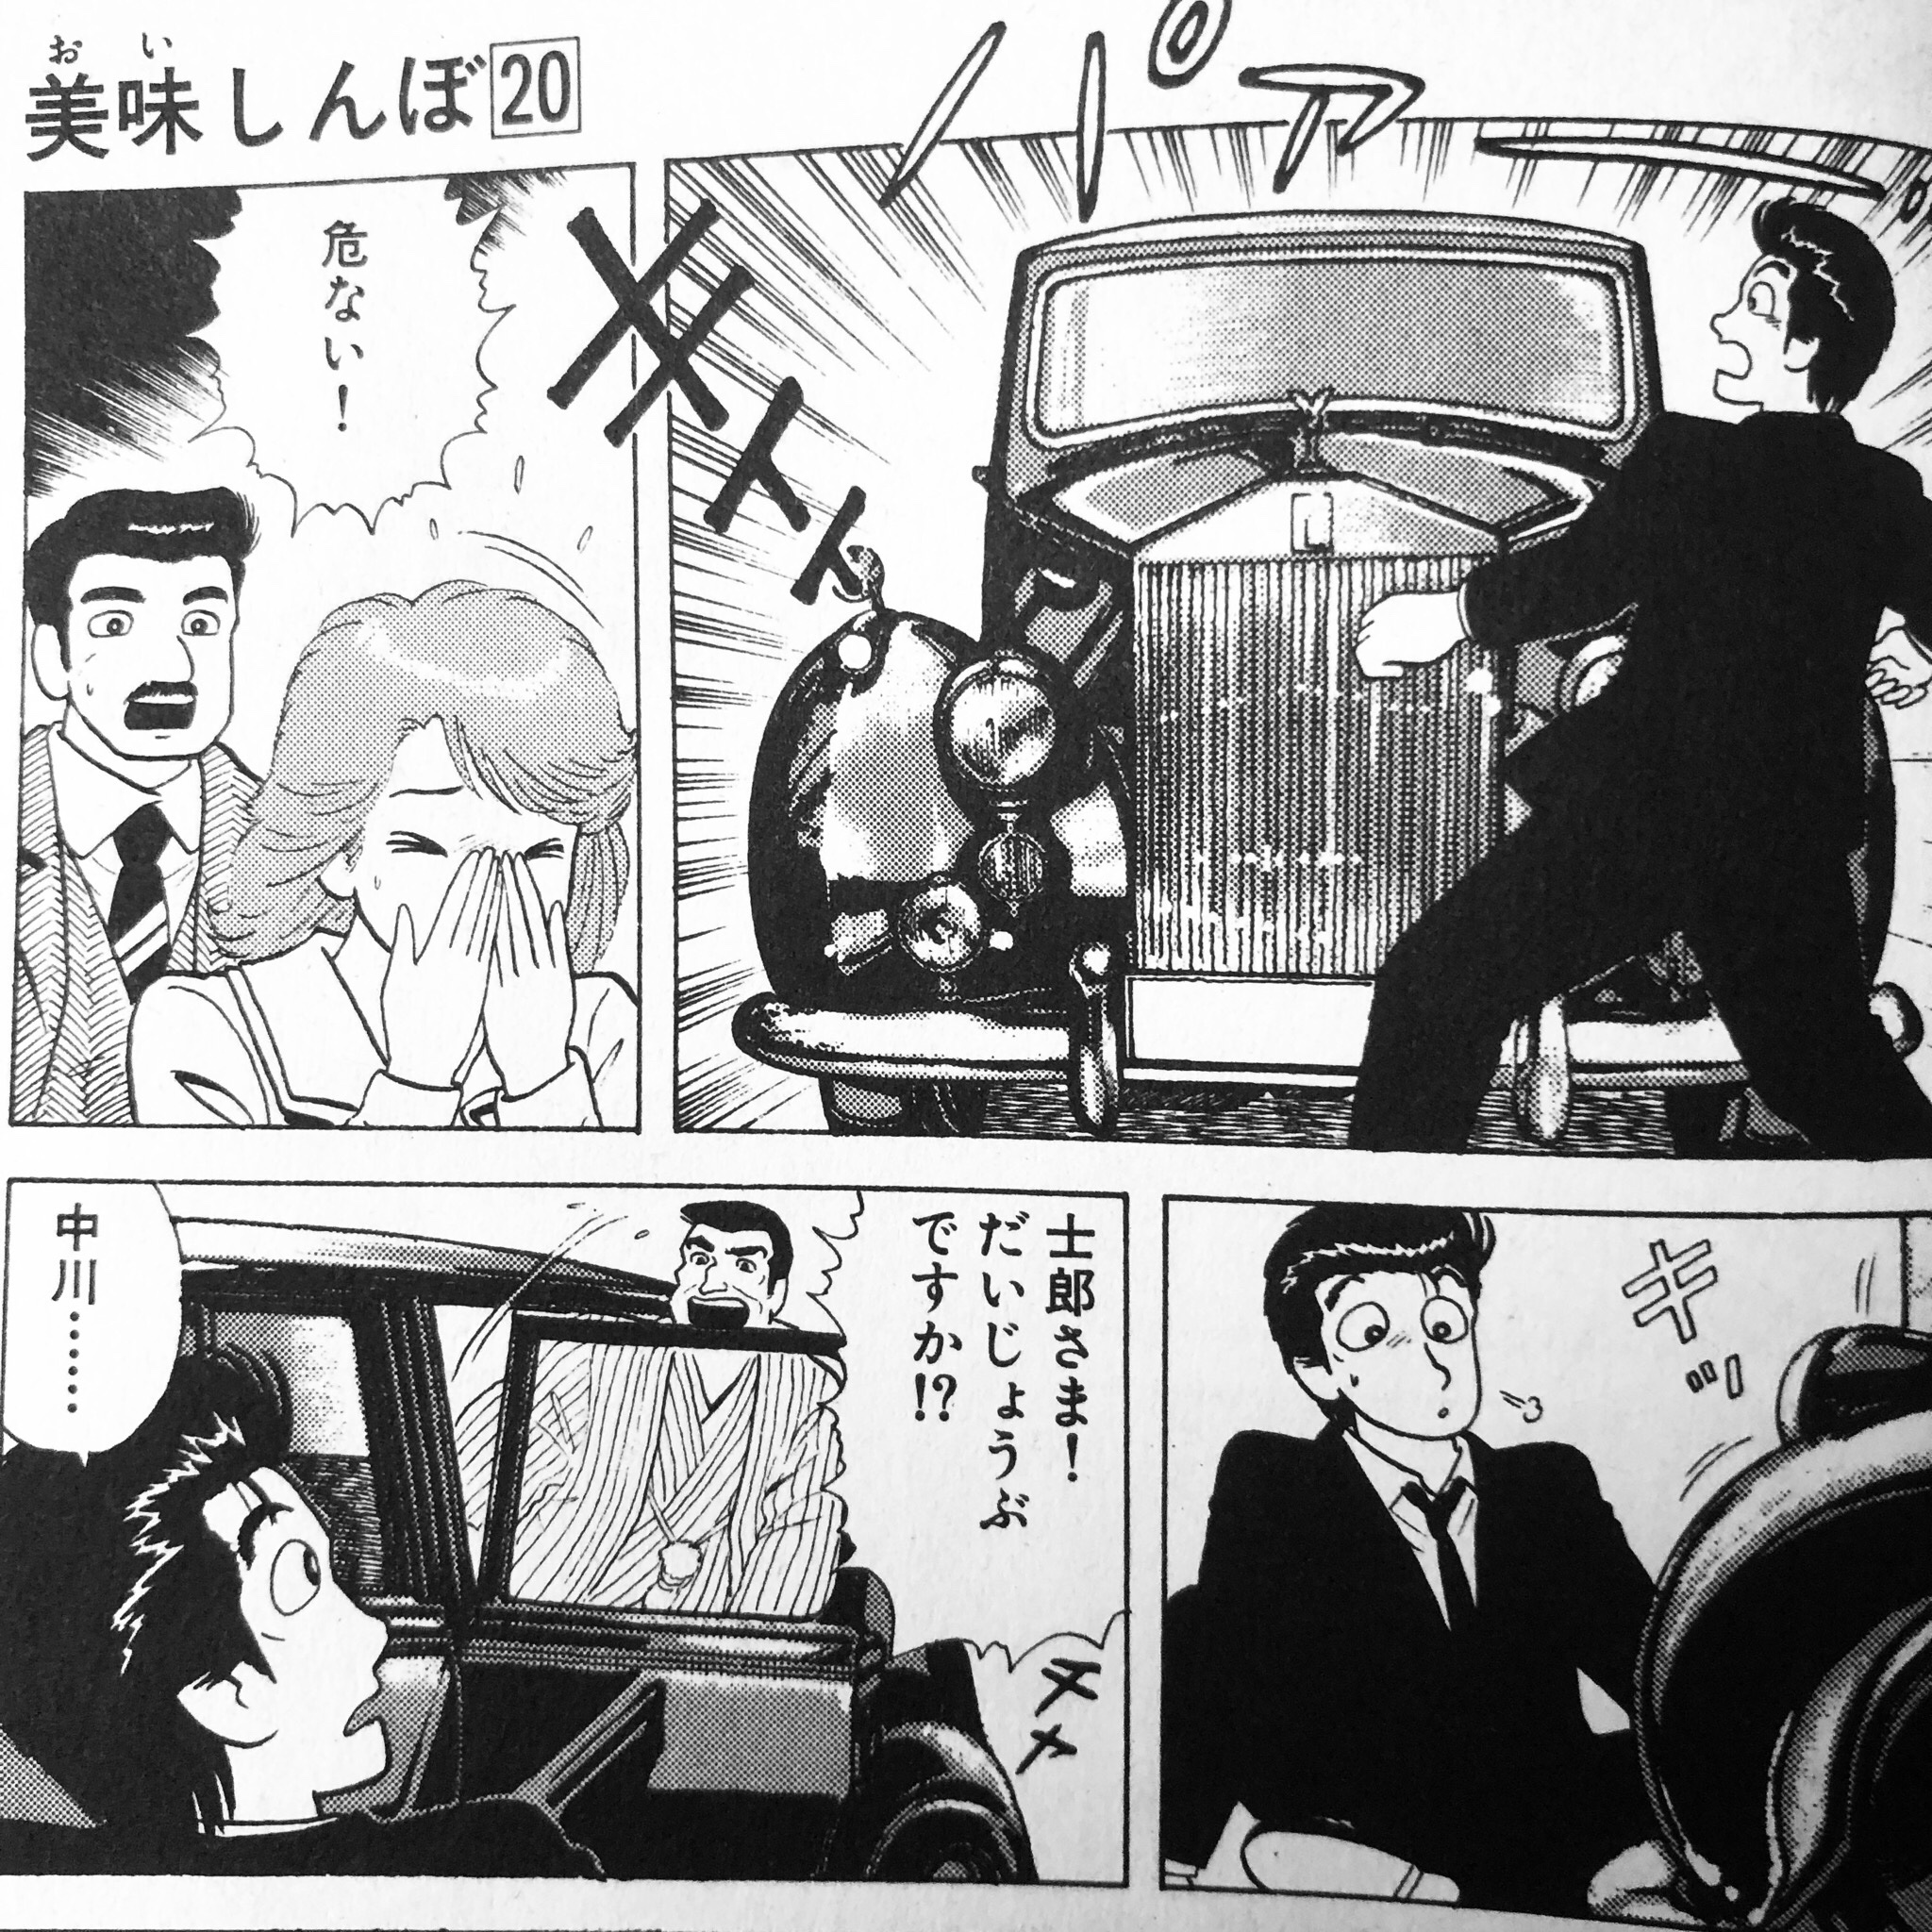 Shimako 海原雄山の名言 14巻 椀方試験 で 渋滞中に雄山が 馬鹿どもに車を与えるなっ と名言を放っておりますが 残念ながらアニメでは冒頭の なんという混み方だ 以下はカット 渋滞中にこの台詞を言うと 自分達も馬鹿の一員かw と言い